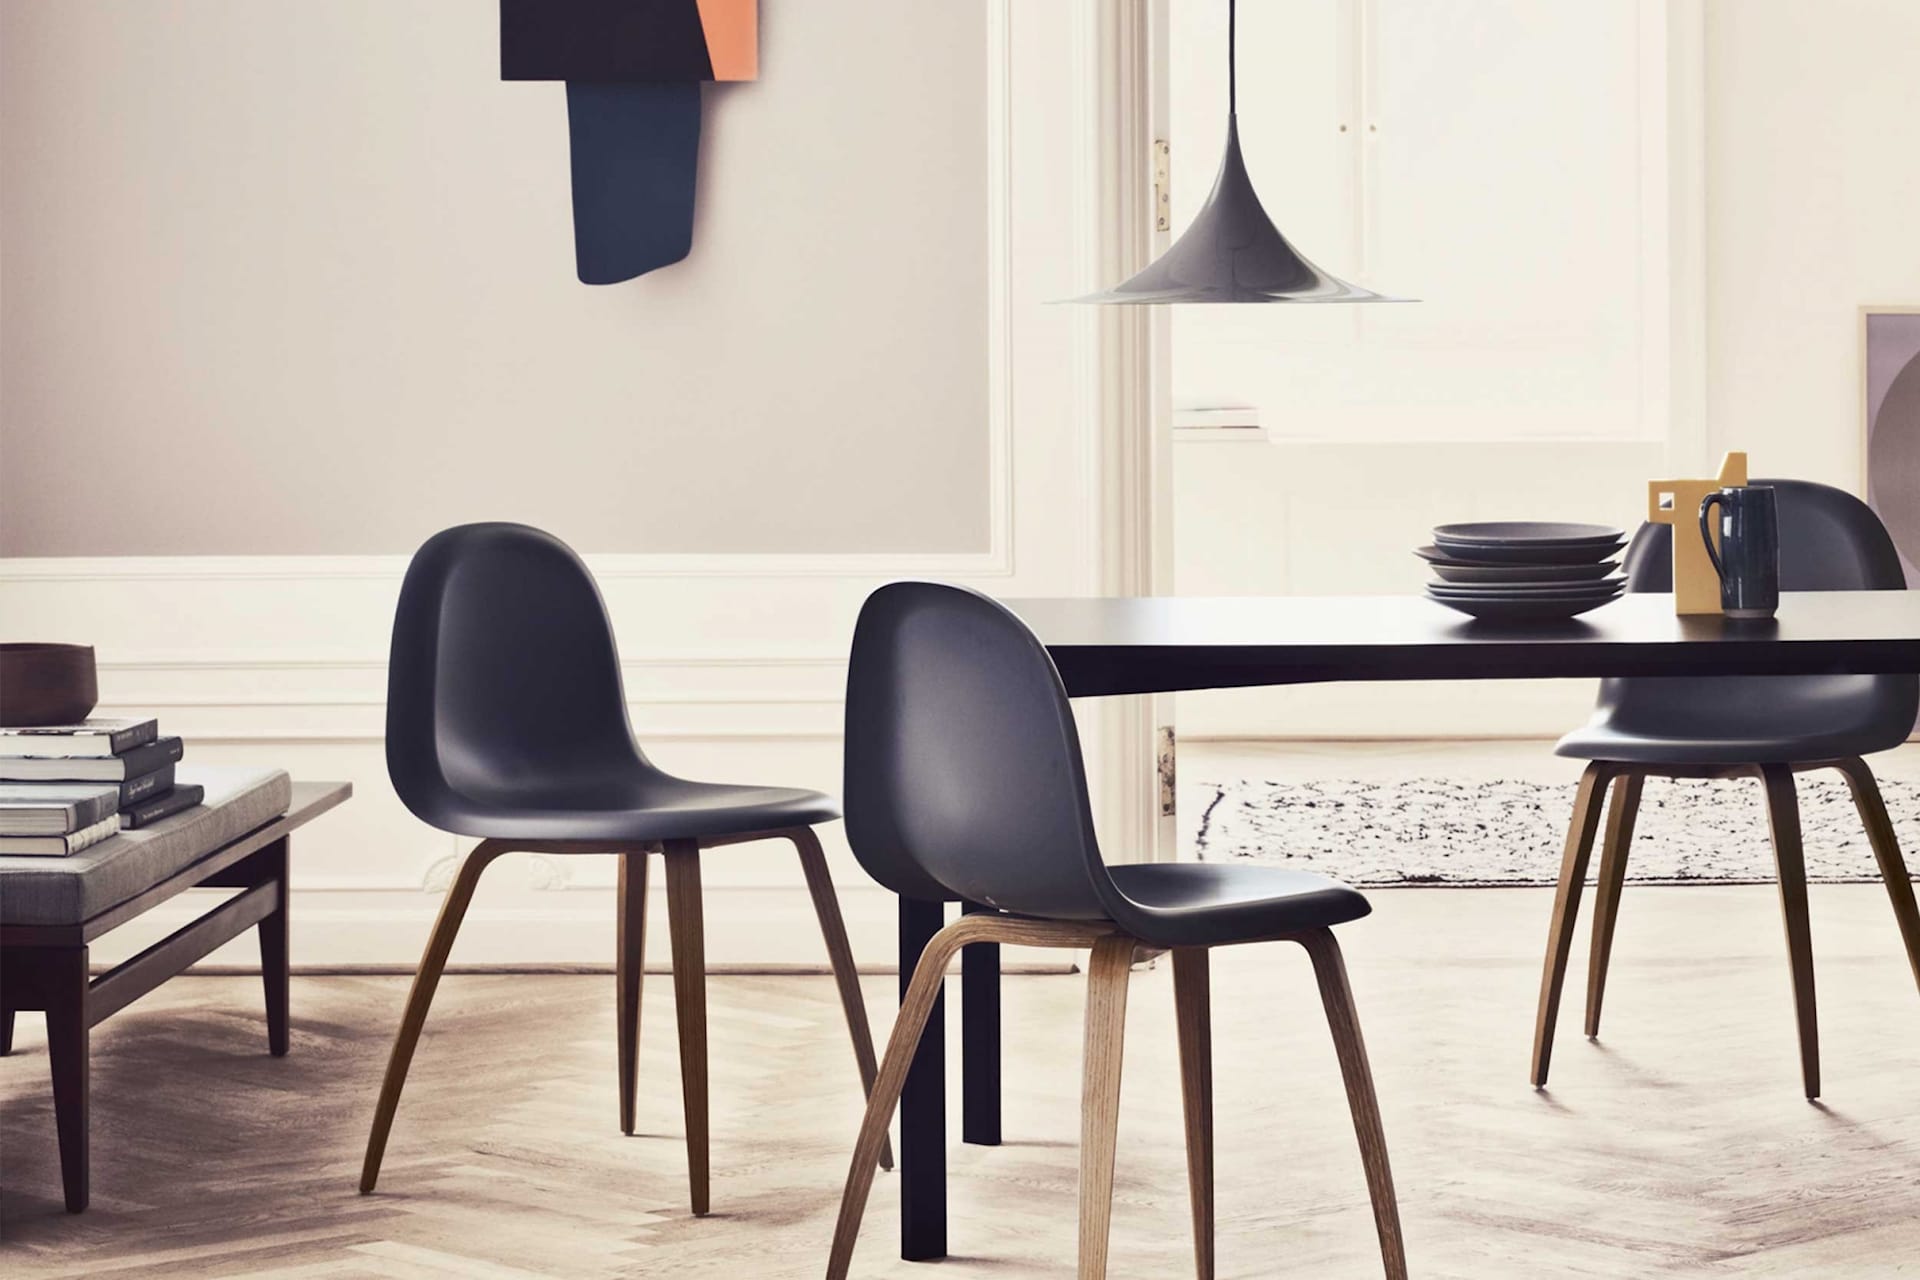 3D Dining Chair Wood Base - Ikke polstret - Gubi - NO GA